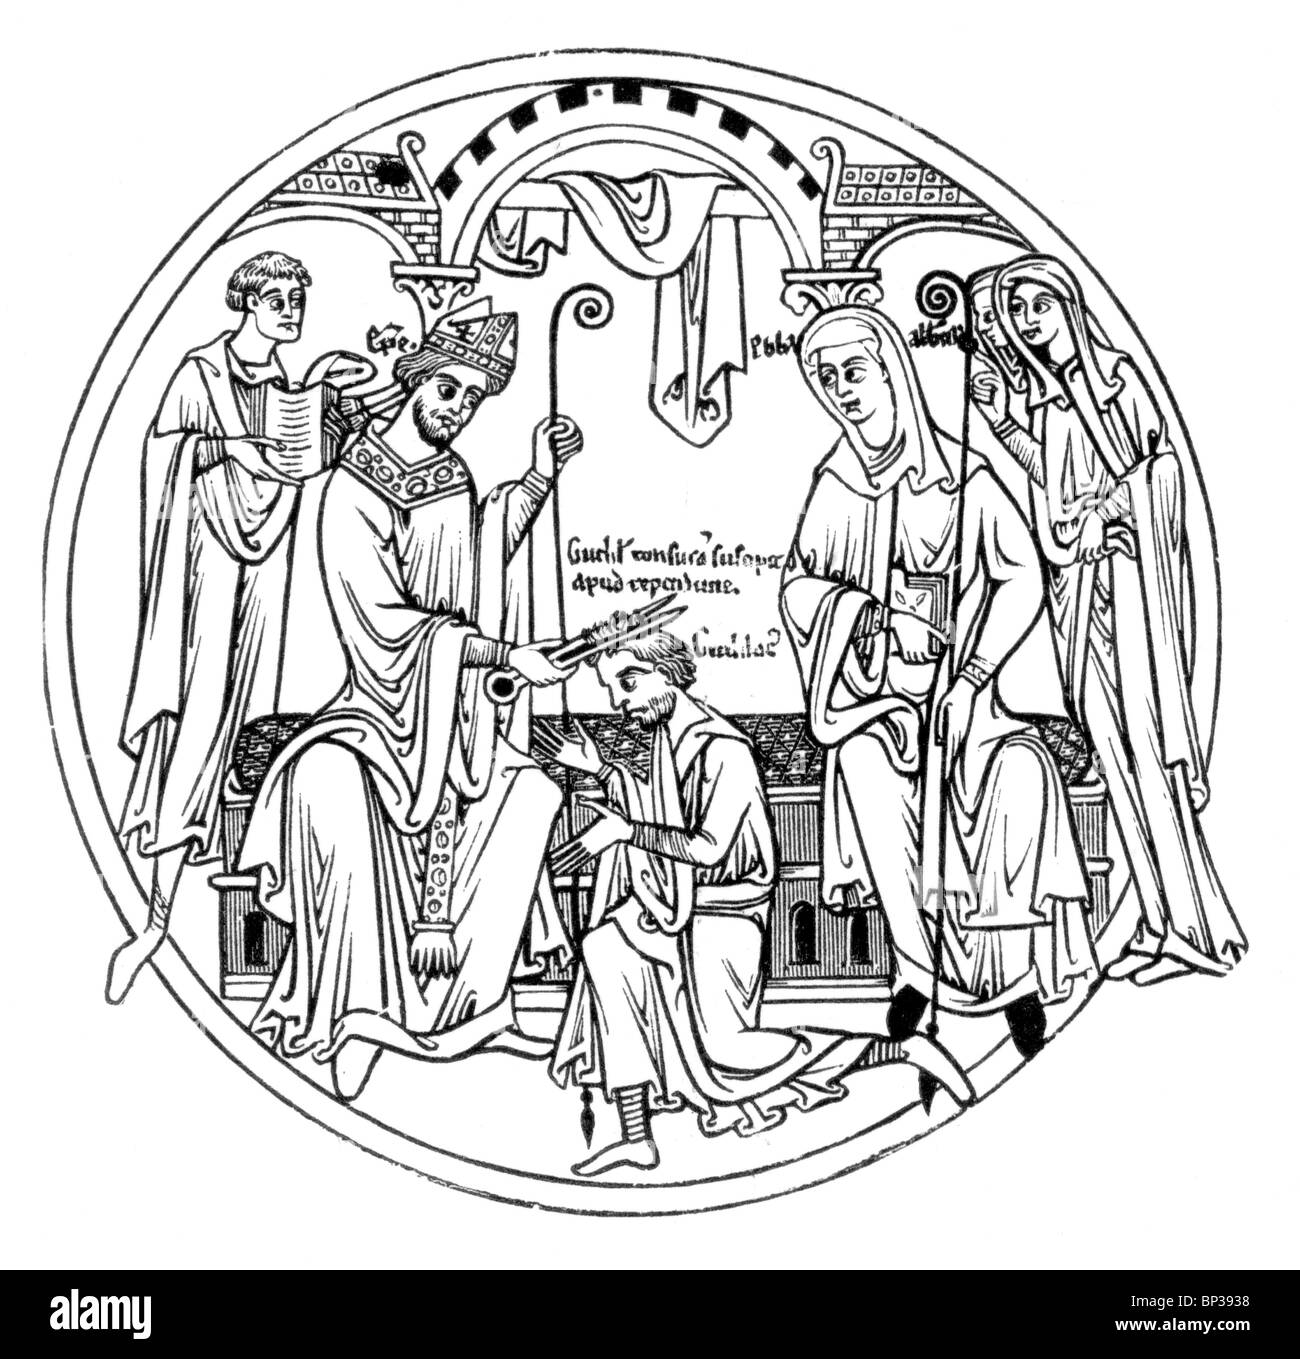 Illustration noir et blanc ; Scène du rouleau de Guthlac;12ème siècle ; la vie de Guthlac ; Guthlac recevant la tonsure Banque D'Images